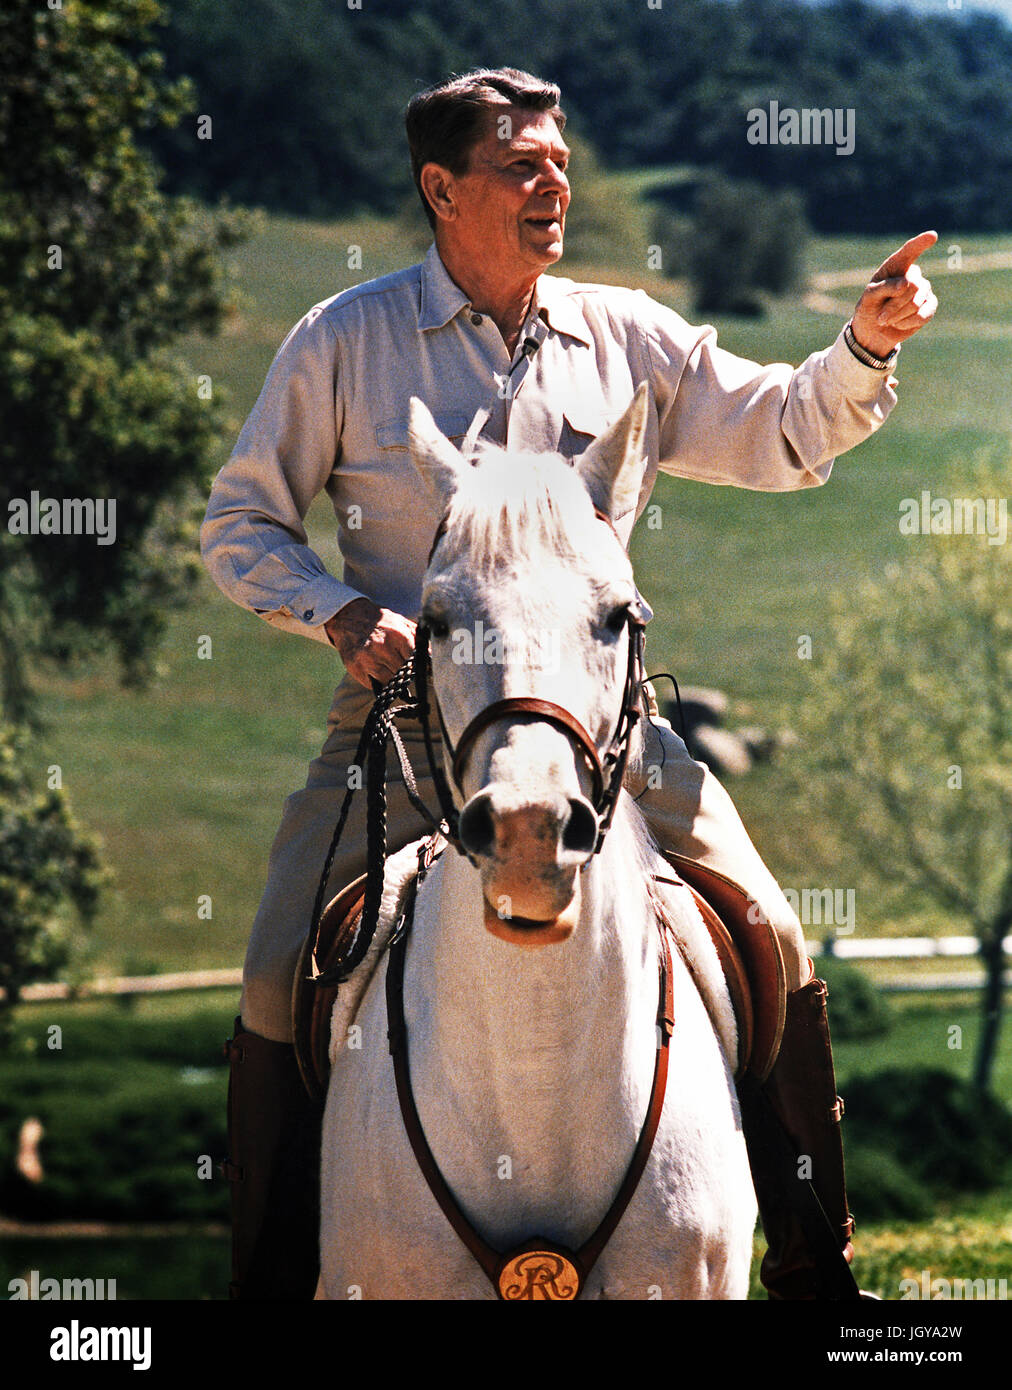 Ronald Reagan on horseback at his California ranch Stock Photo